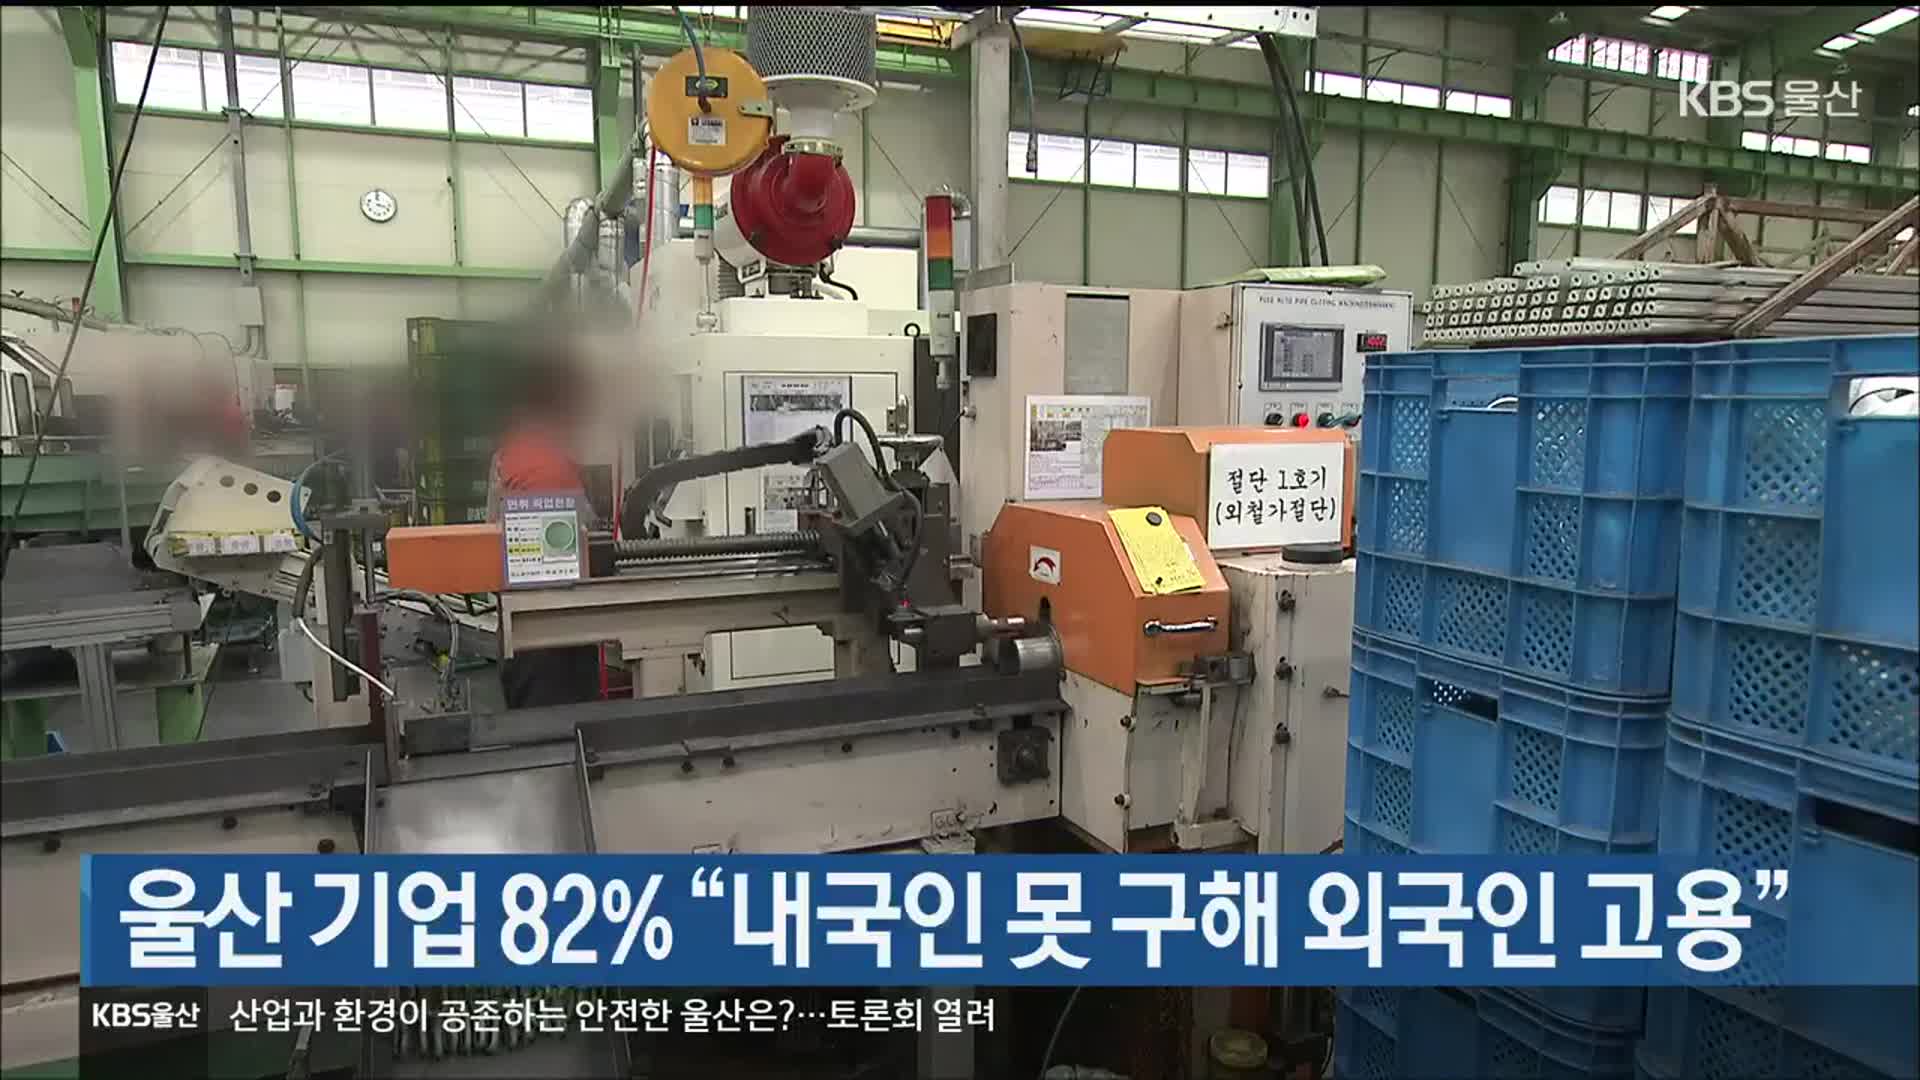 울산 기업 82% “내국인 못 구해 외국인 고용”